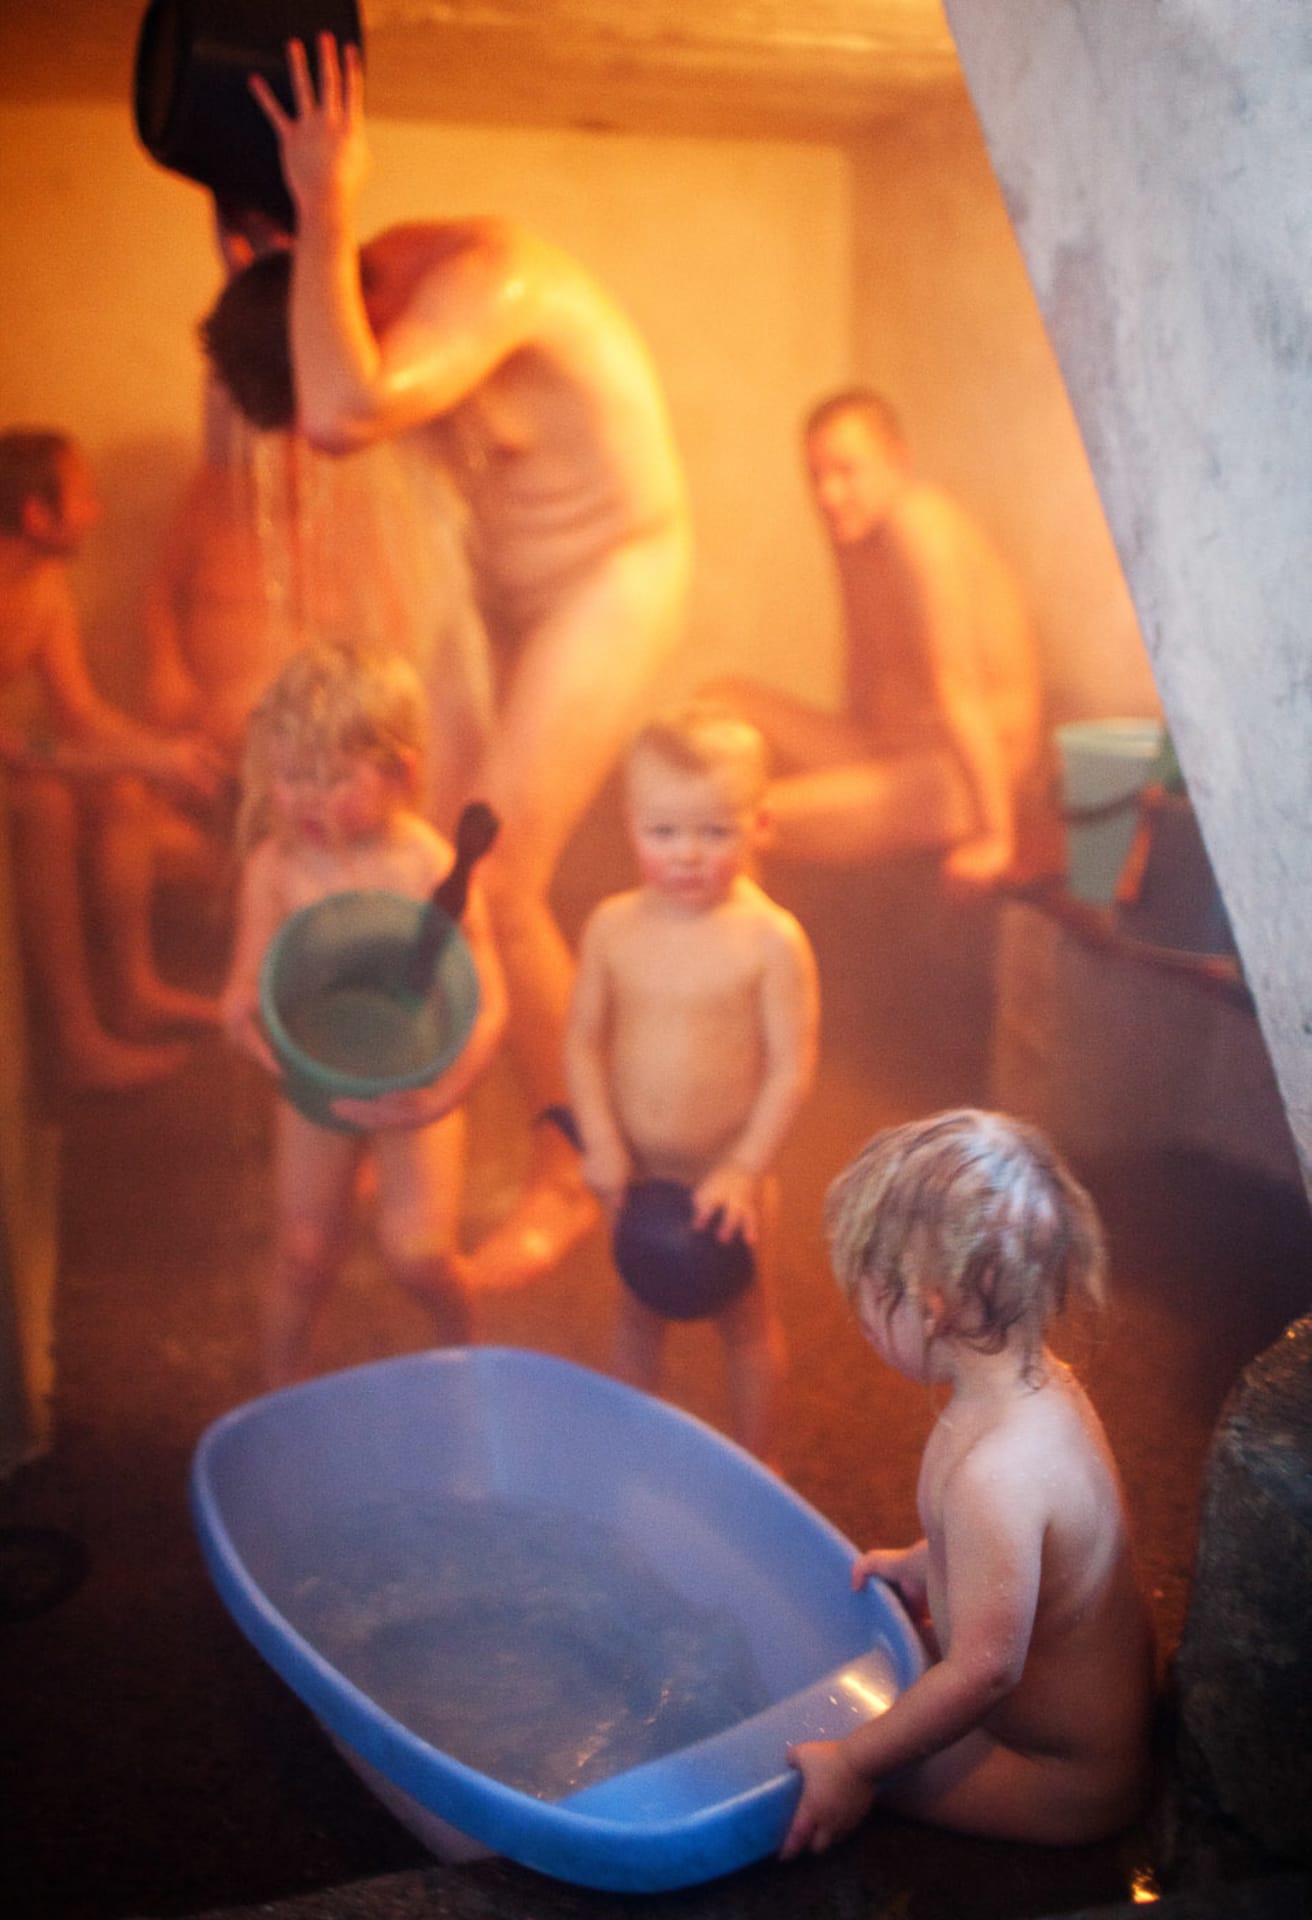 Rajaportti sauna, men's washing space